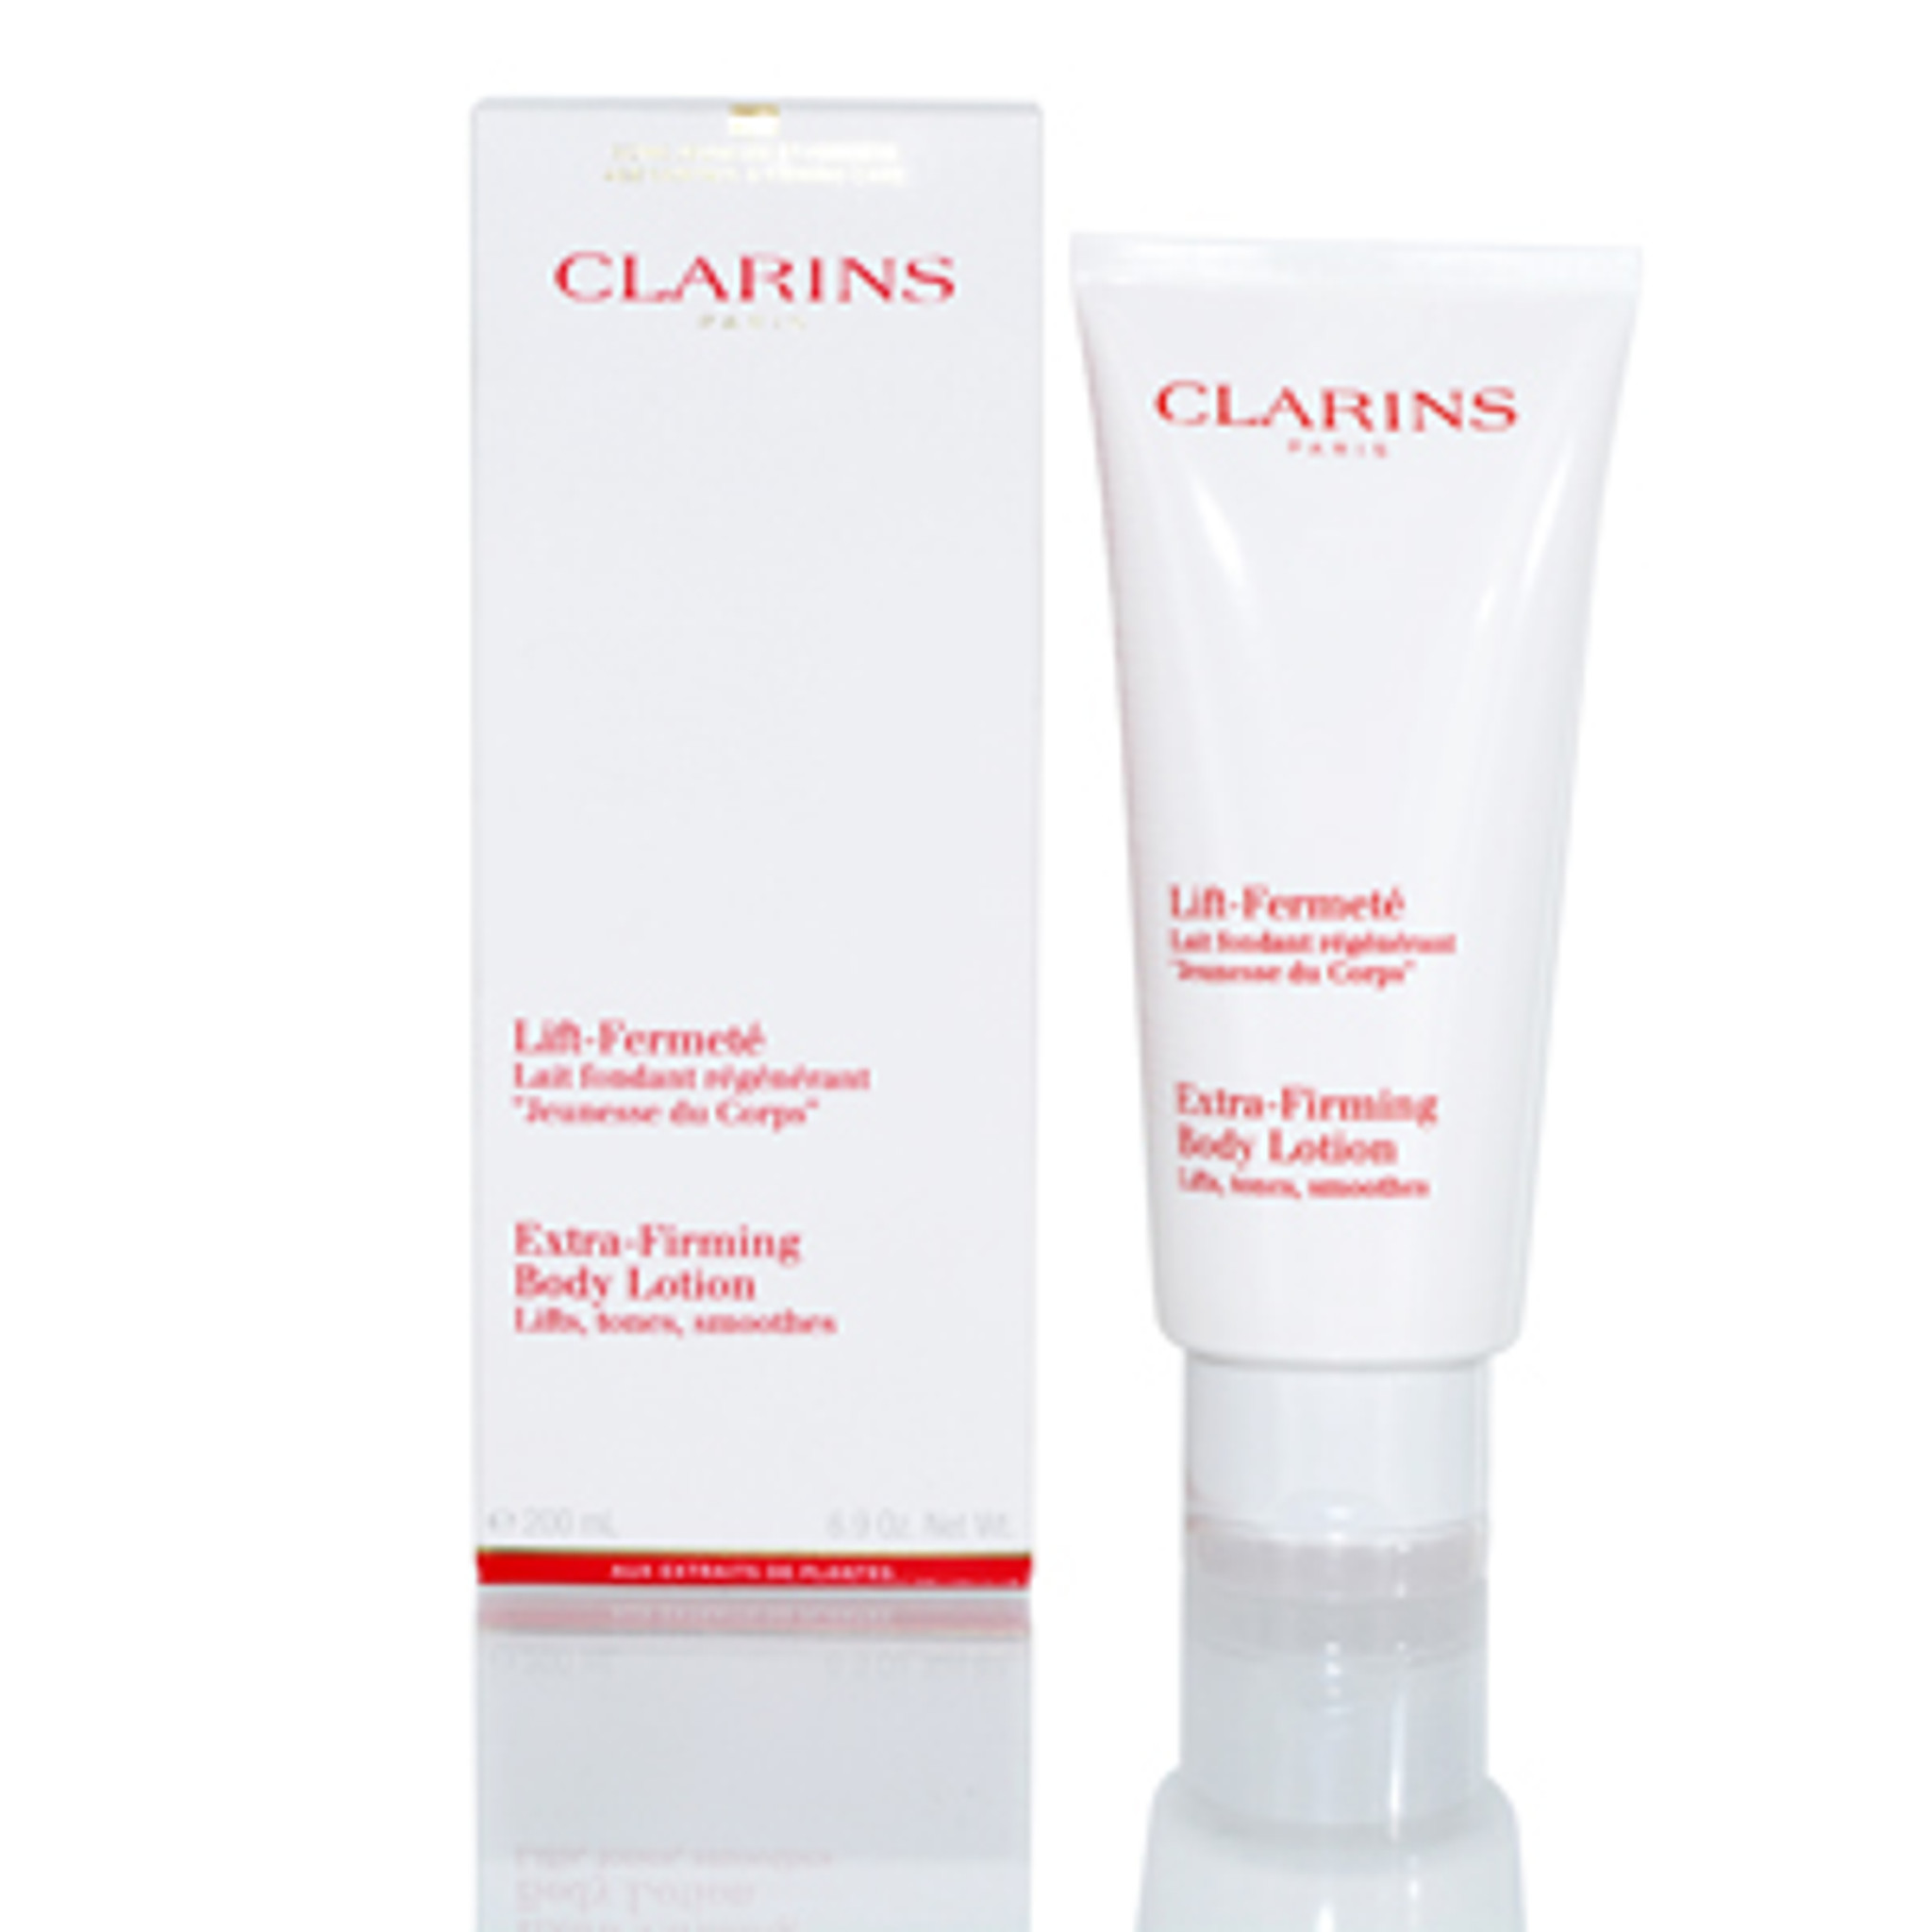 Clarins/ekstra opstrammende bodylotion 6,7 oz løft, glat